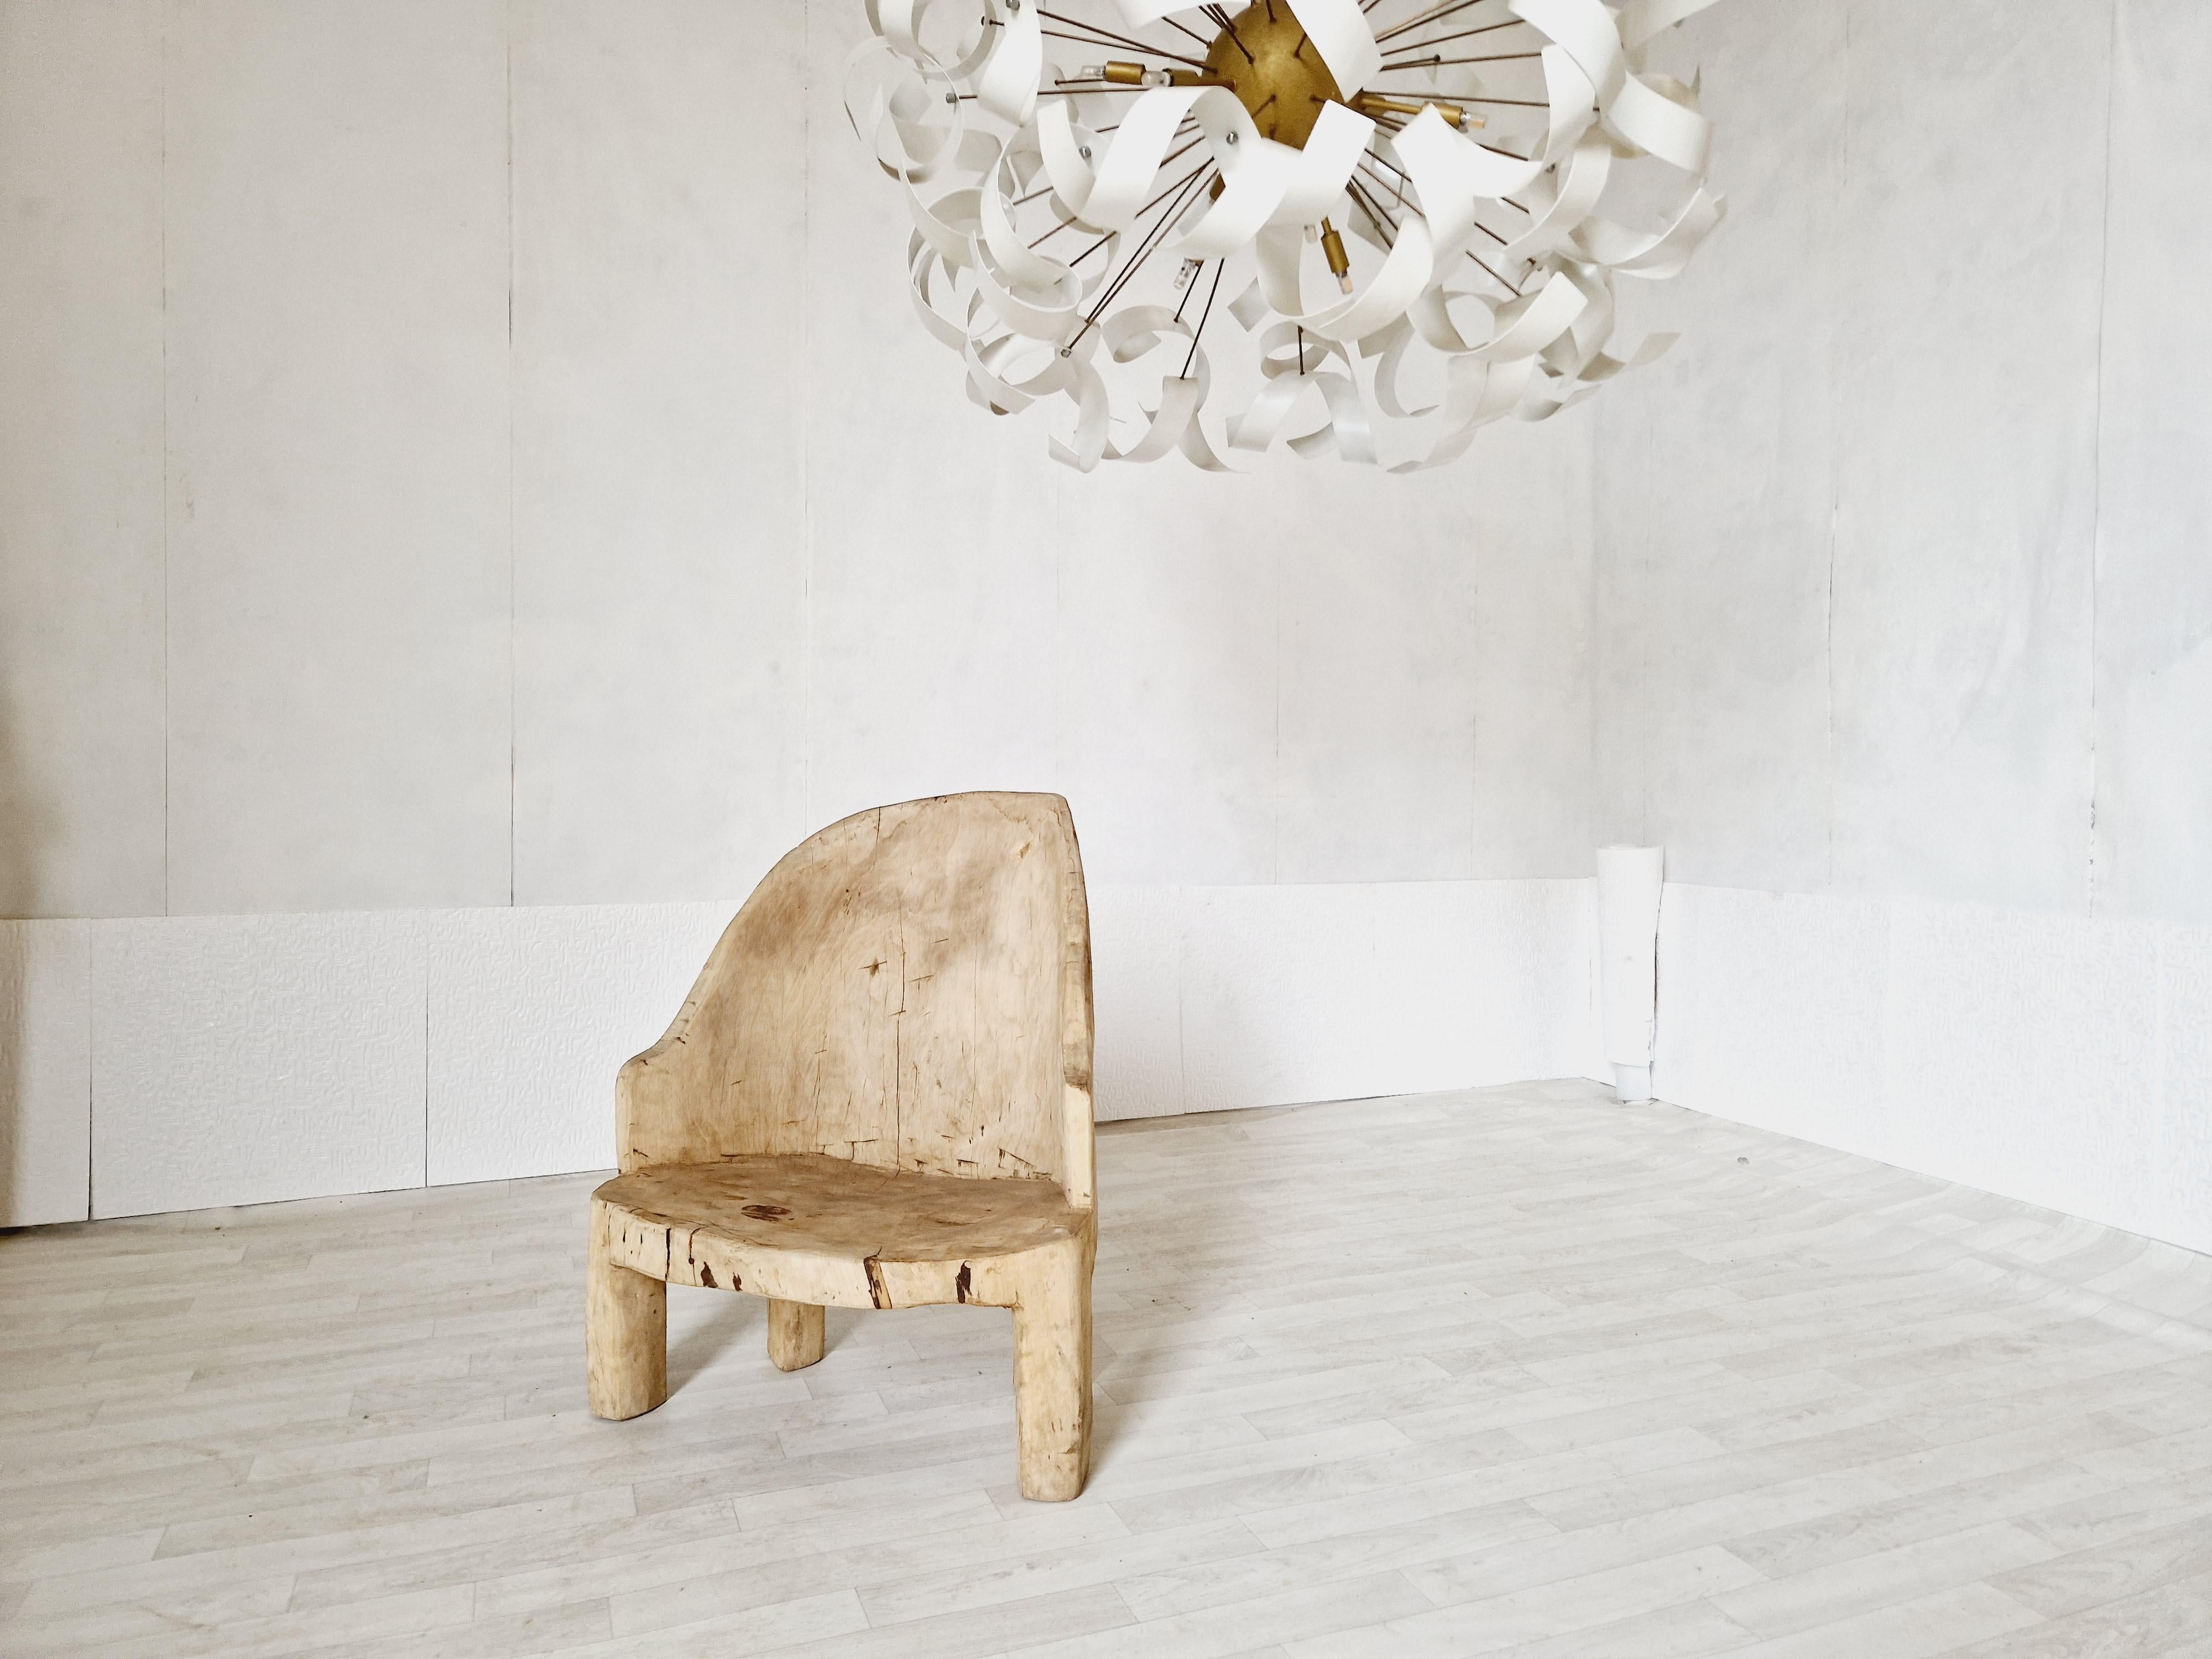 Dieser seltene Monoxyle-Sessel ist ein einzigartiges Vintage-Möbelstück im Brutaliste-Stil, hergestellt aus einer einzigen Kiefer und handgeschnitzt in den frühen bis mittleren 1900er Jahren. Durch seine runde Form, die Farbe des rohen Holzes und